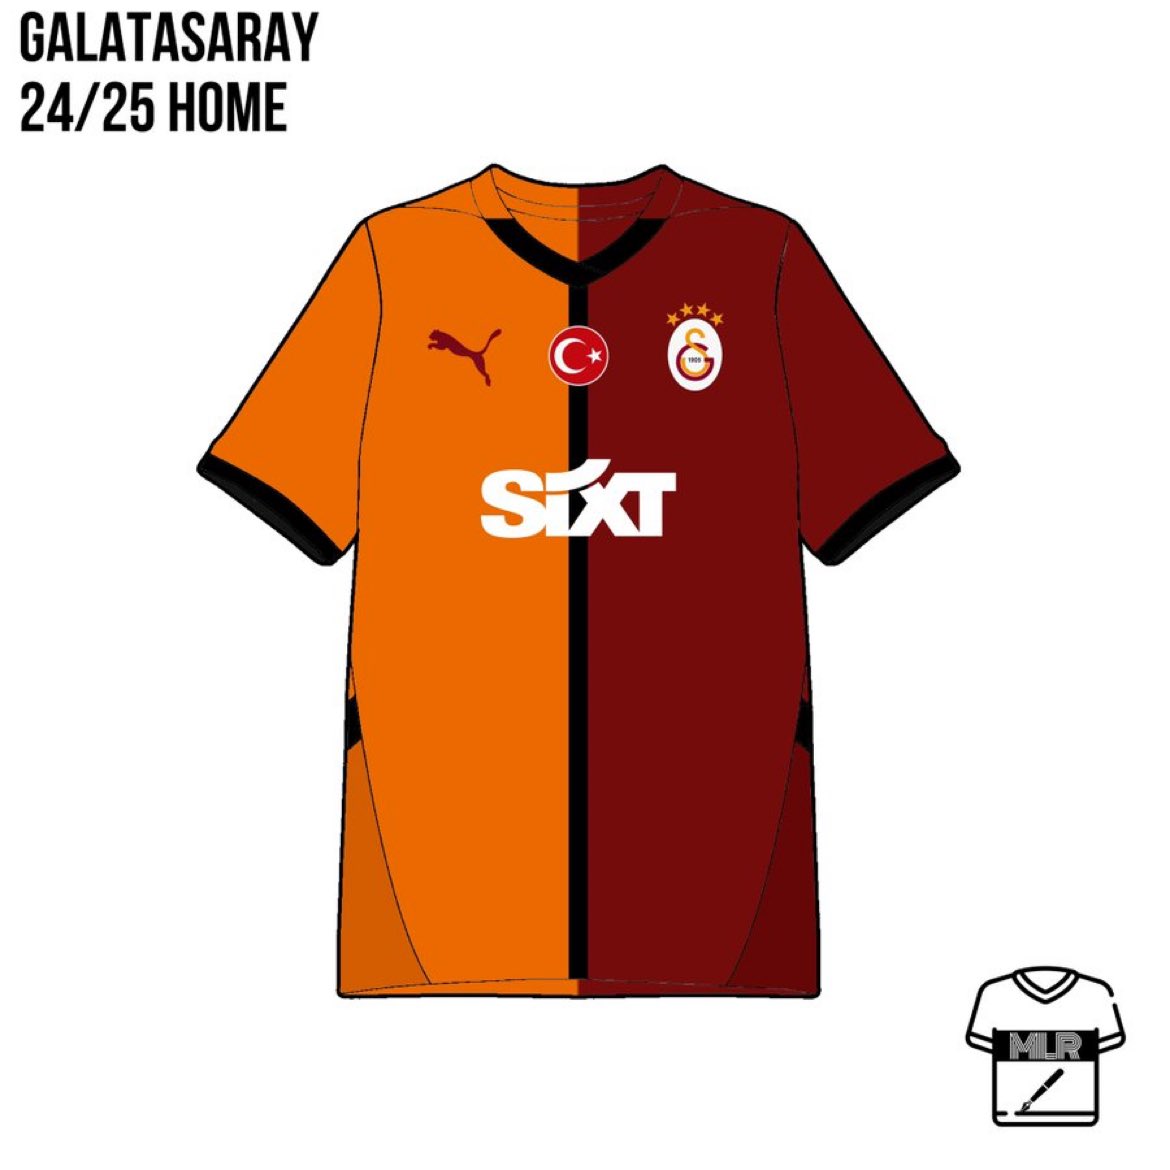 Galatasaray’ın 24/25 sezonunda giyeceği ilk parçalı forma 𝘮𝘶𝘩𝘵𝘦𝘮𝘦𝘭𝘦𝘯 bu şekilde gözükecek.

(@FormaMilor)